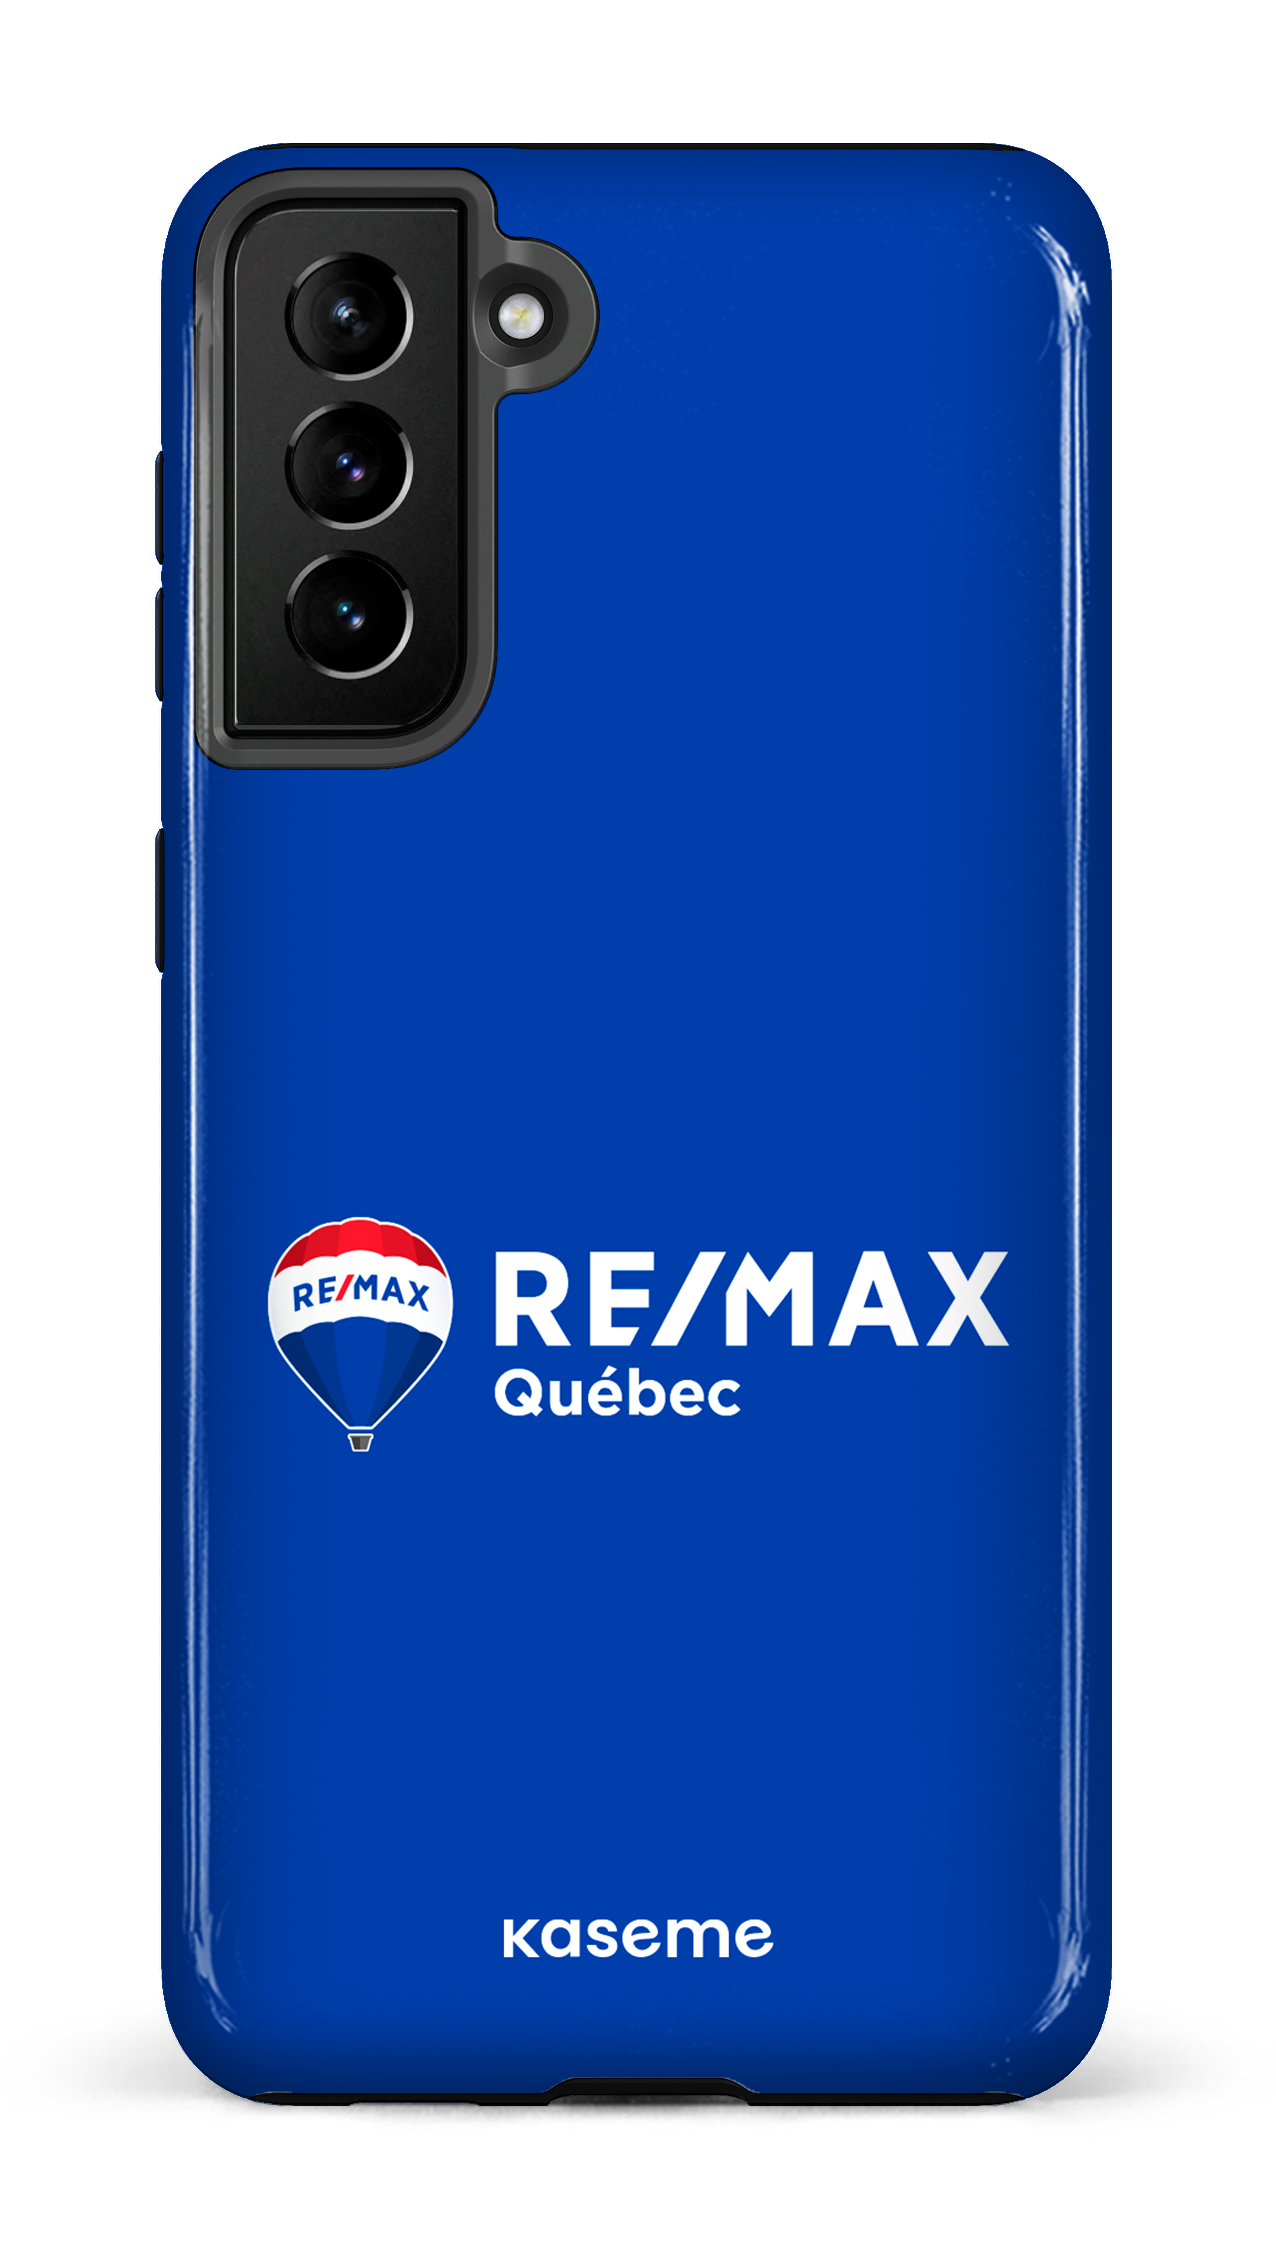 Remax Québec Bleu - Galaxy S21 Plus